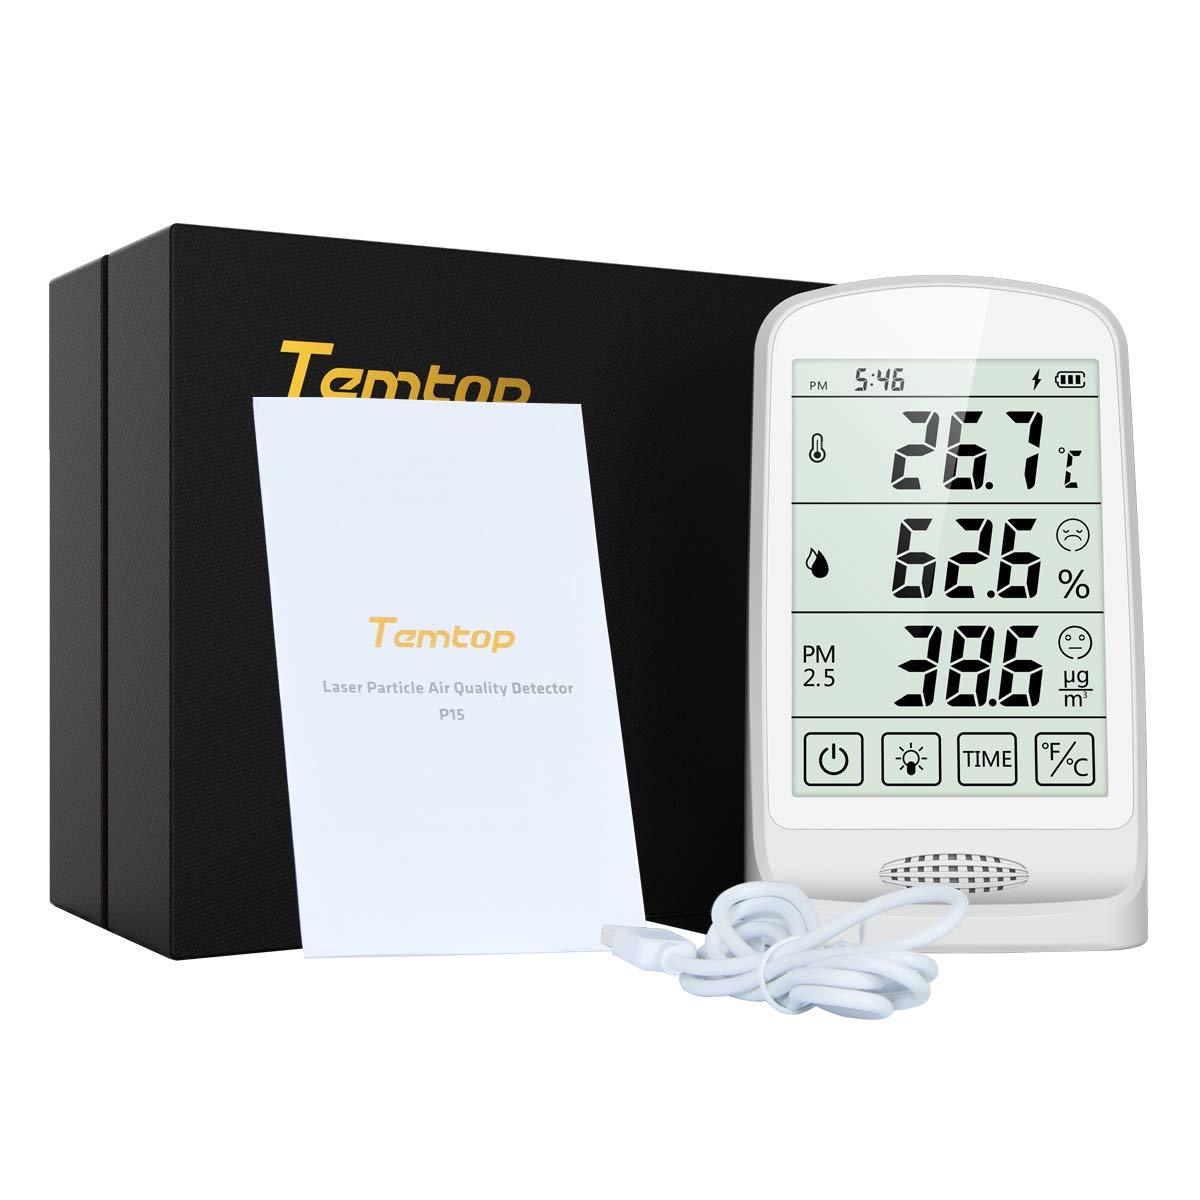 Temptop P15 空気品質モニター、PM2.5 AQI 温度と湿度のリアルタイム検出と表示